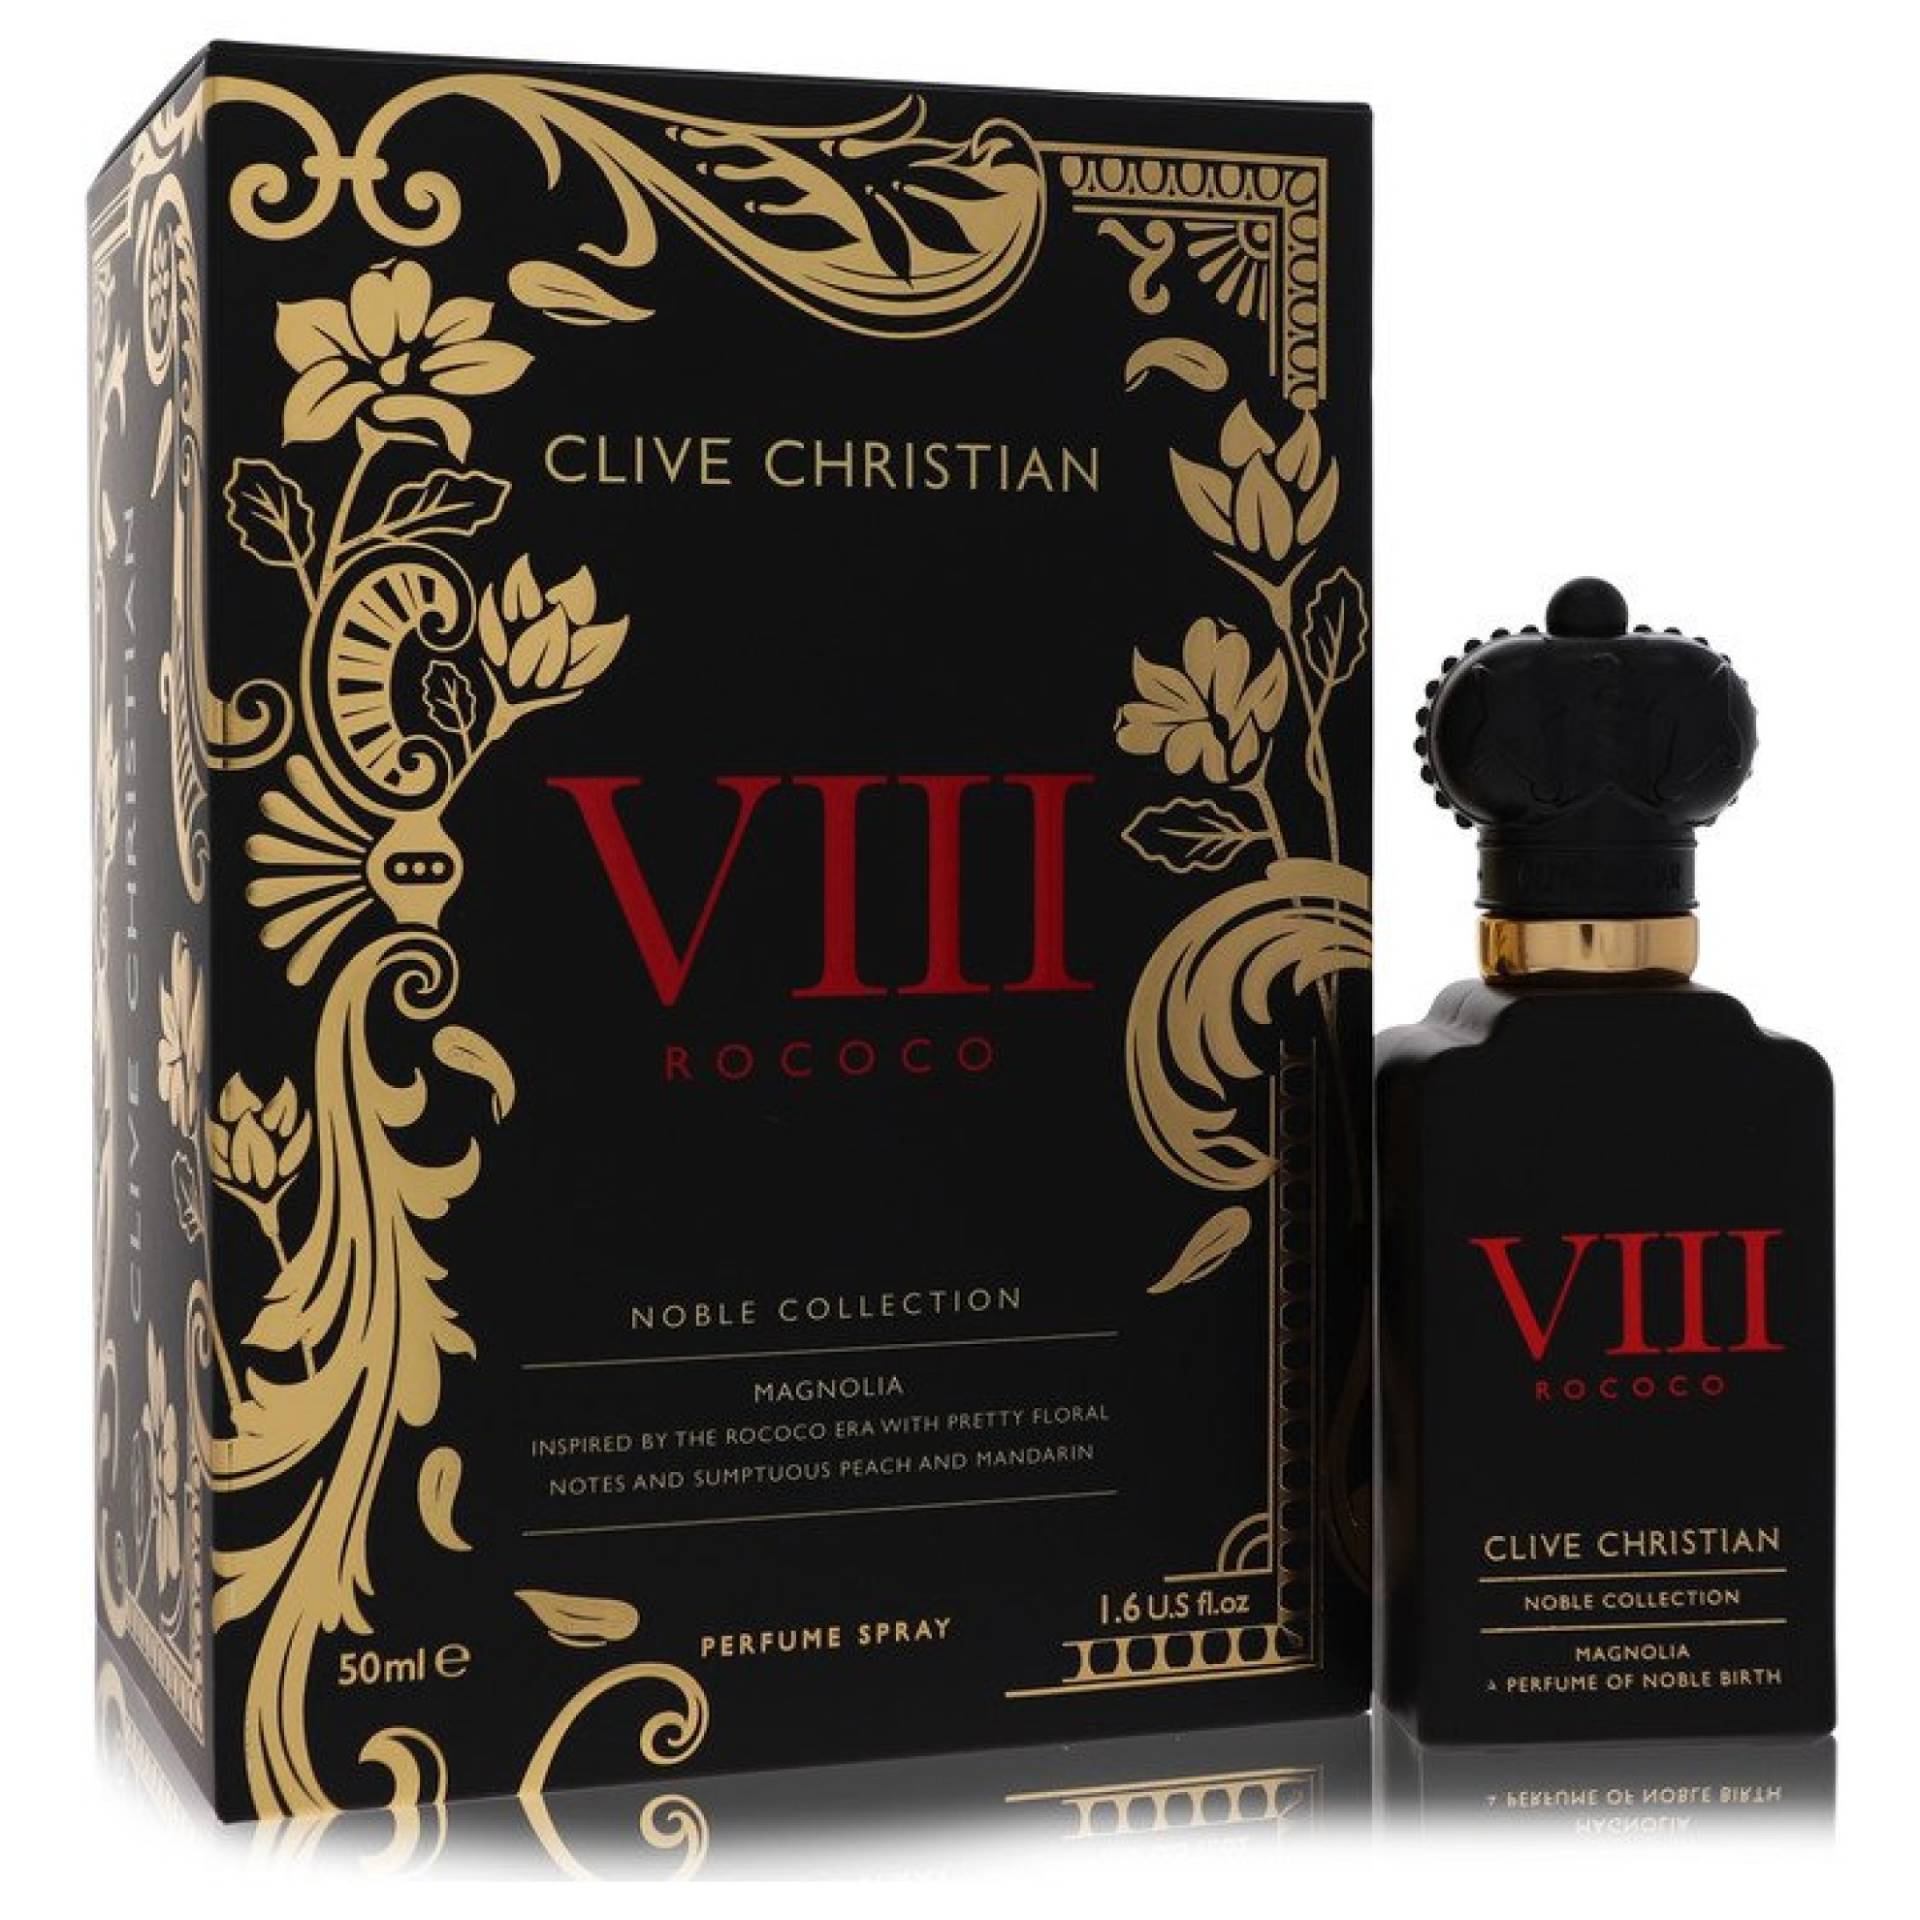 Clive Christian VIII Rococo Magnolia Perfume Spray 50 ml von Clive Christian